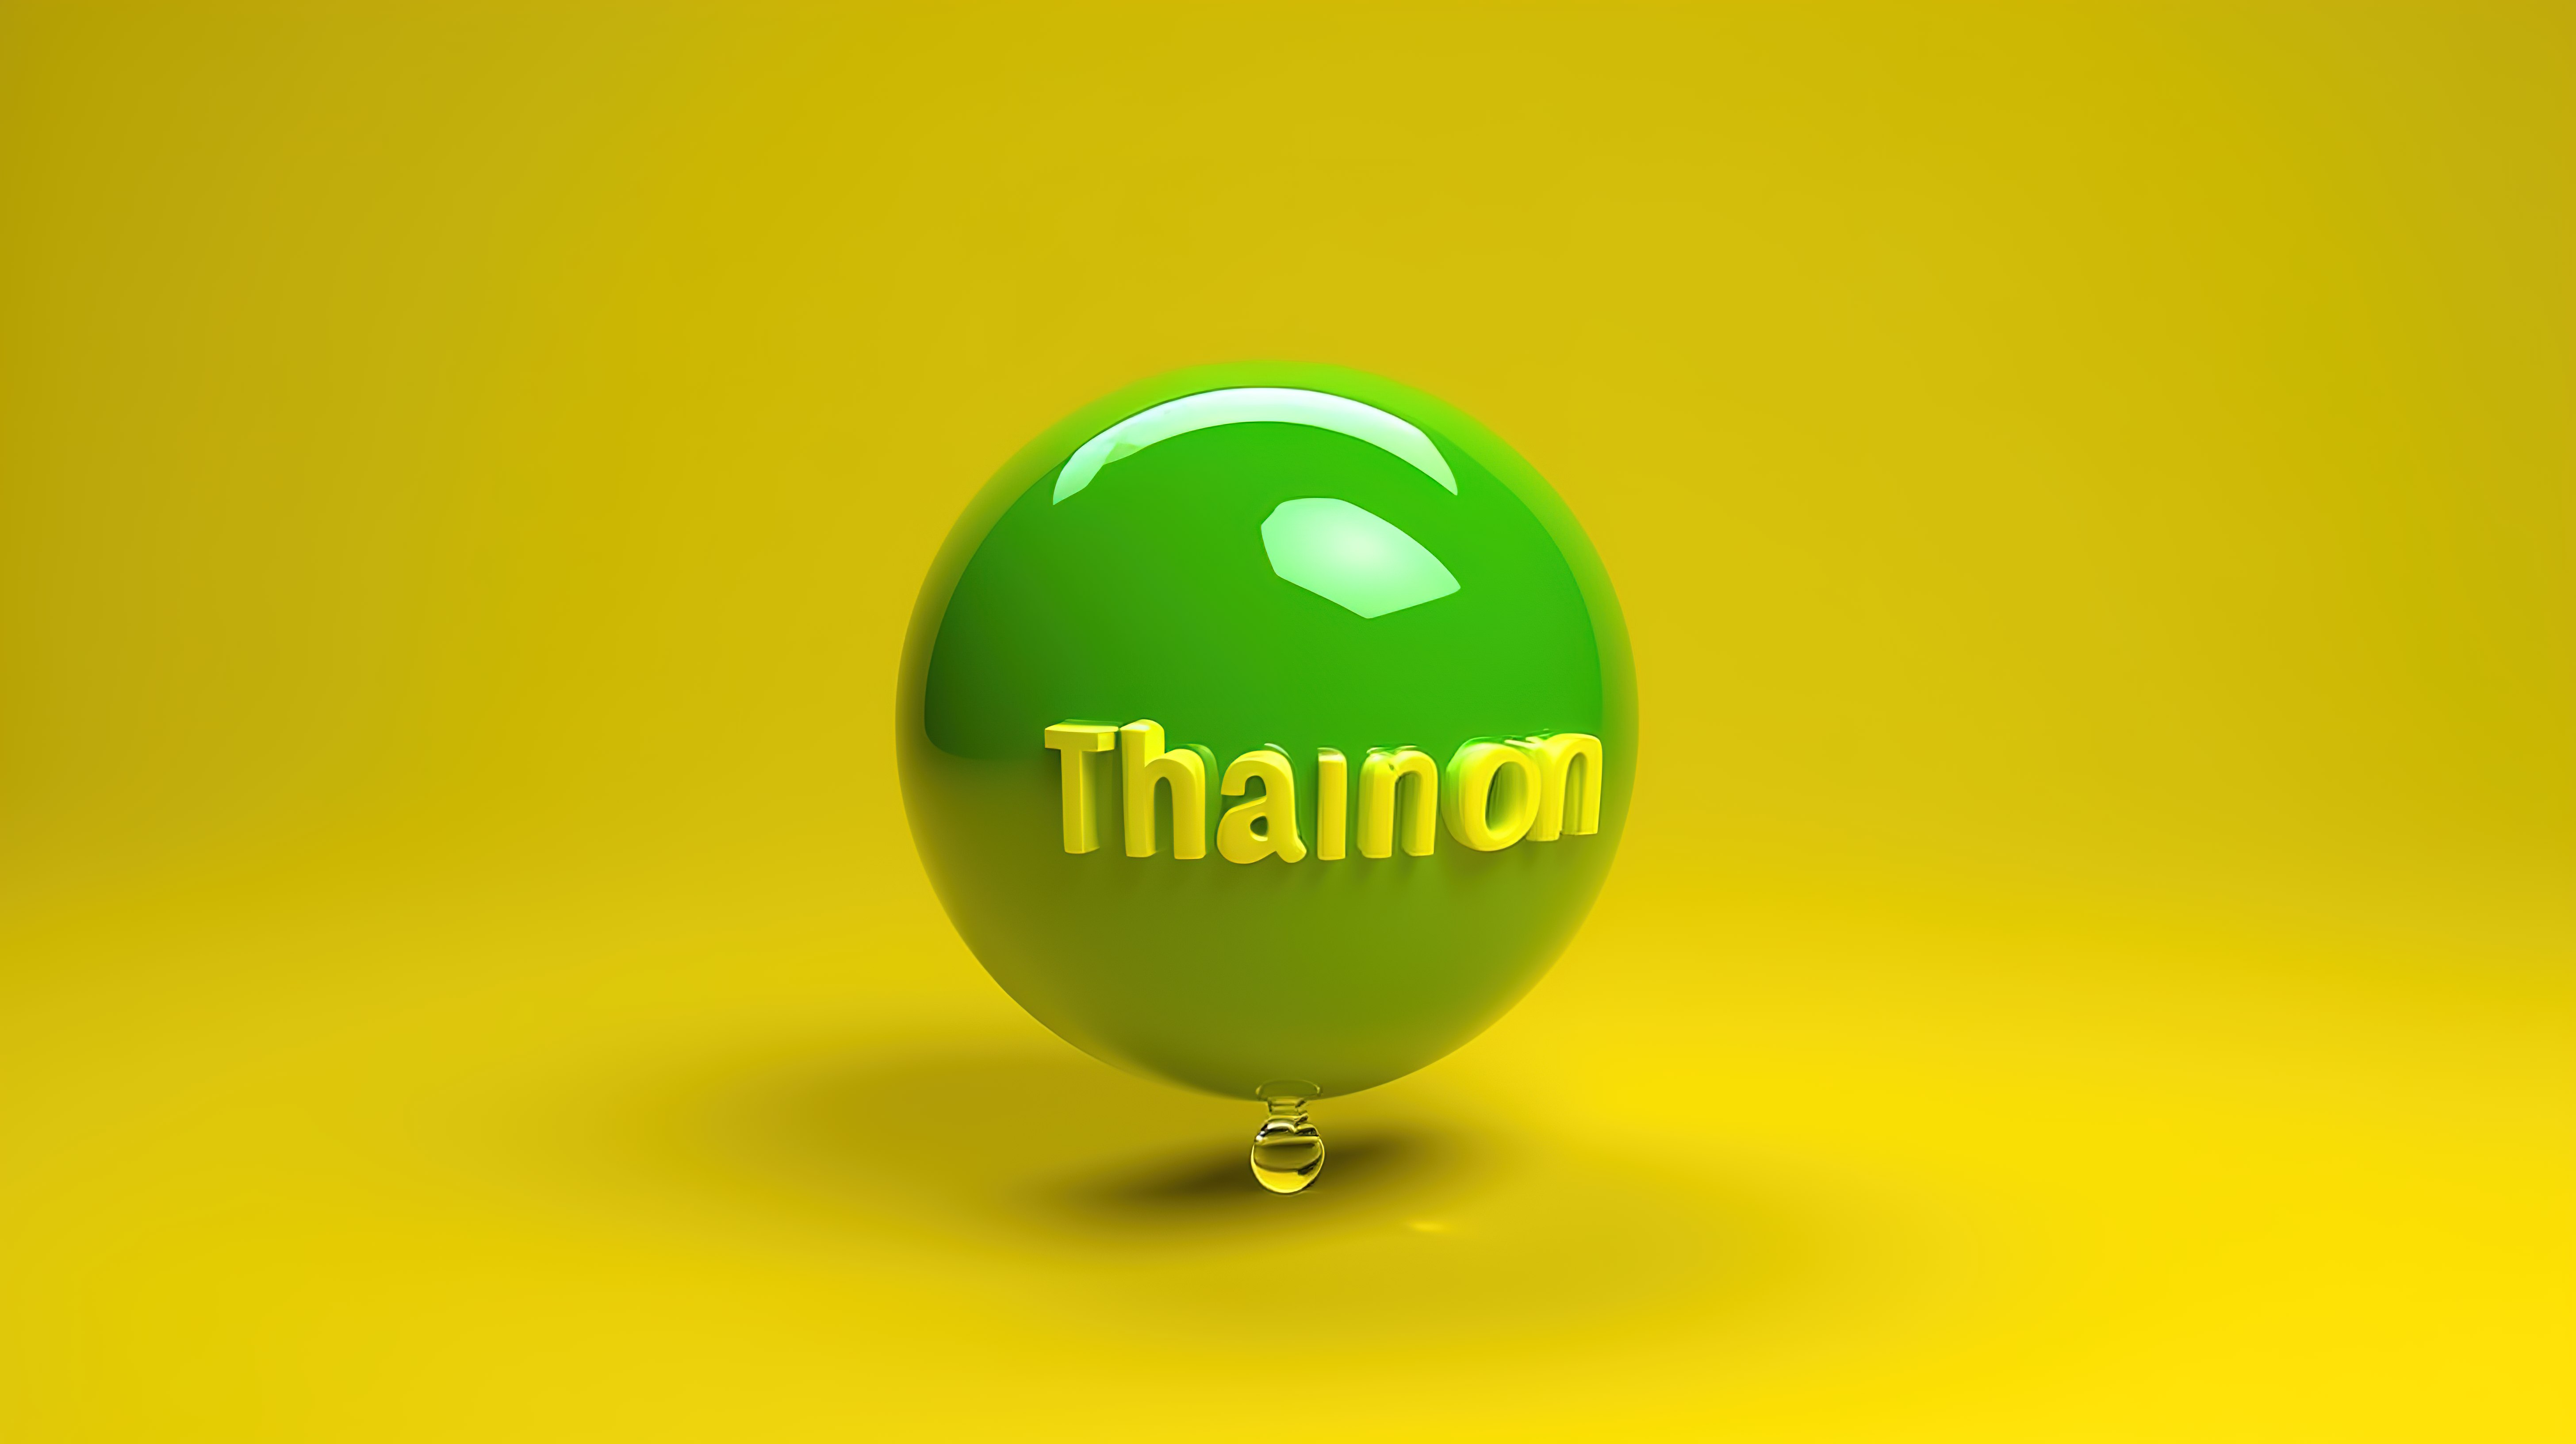 3D 渲染在黄色背景上充满活力的绿色语音气泡中表达感激之情图片